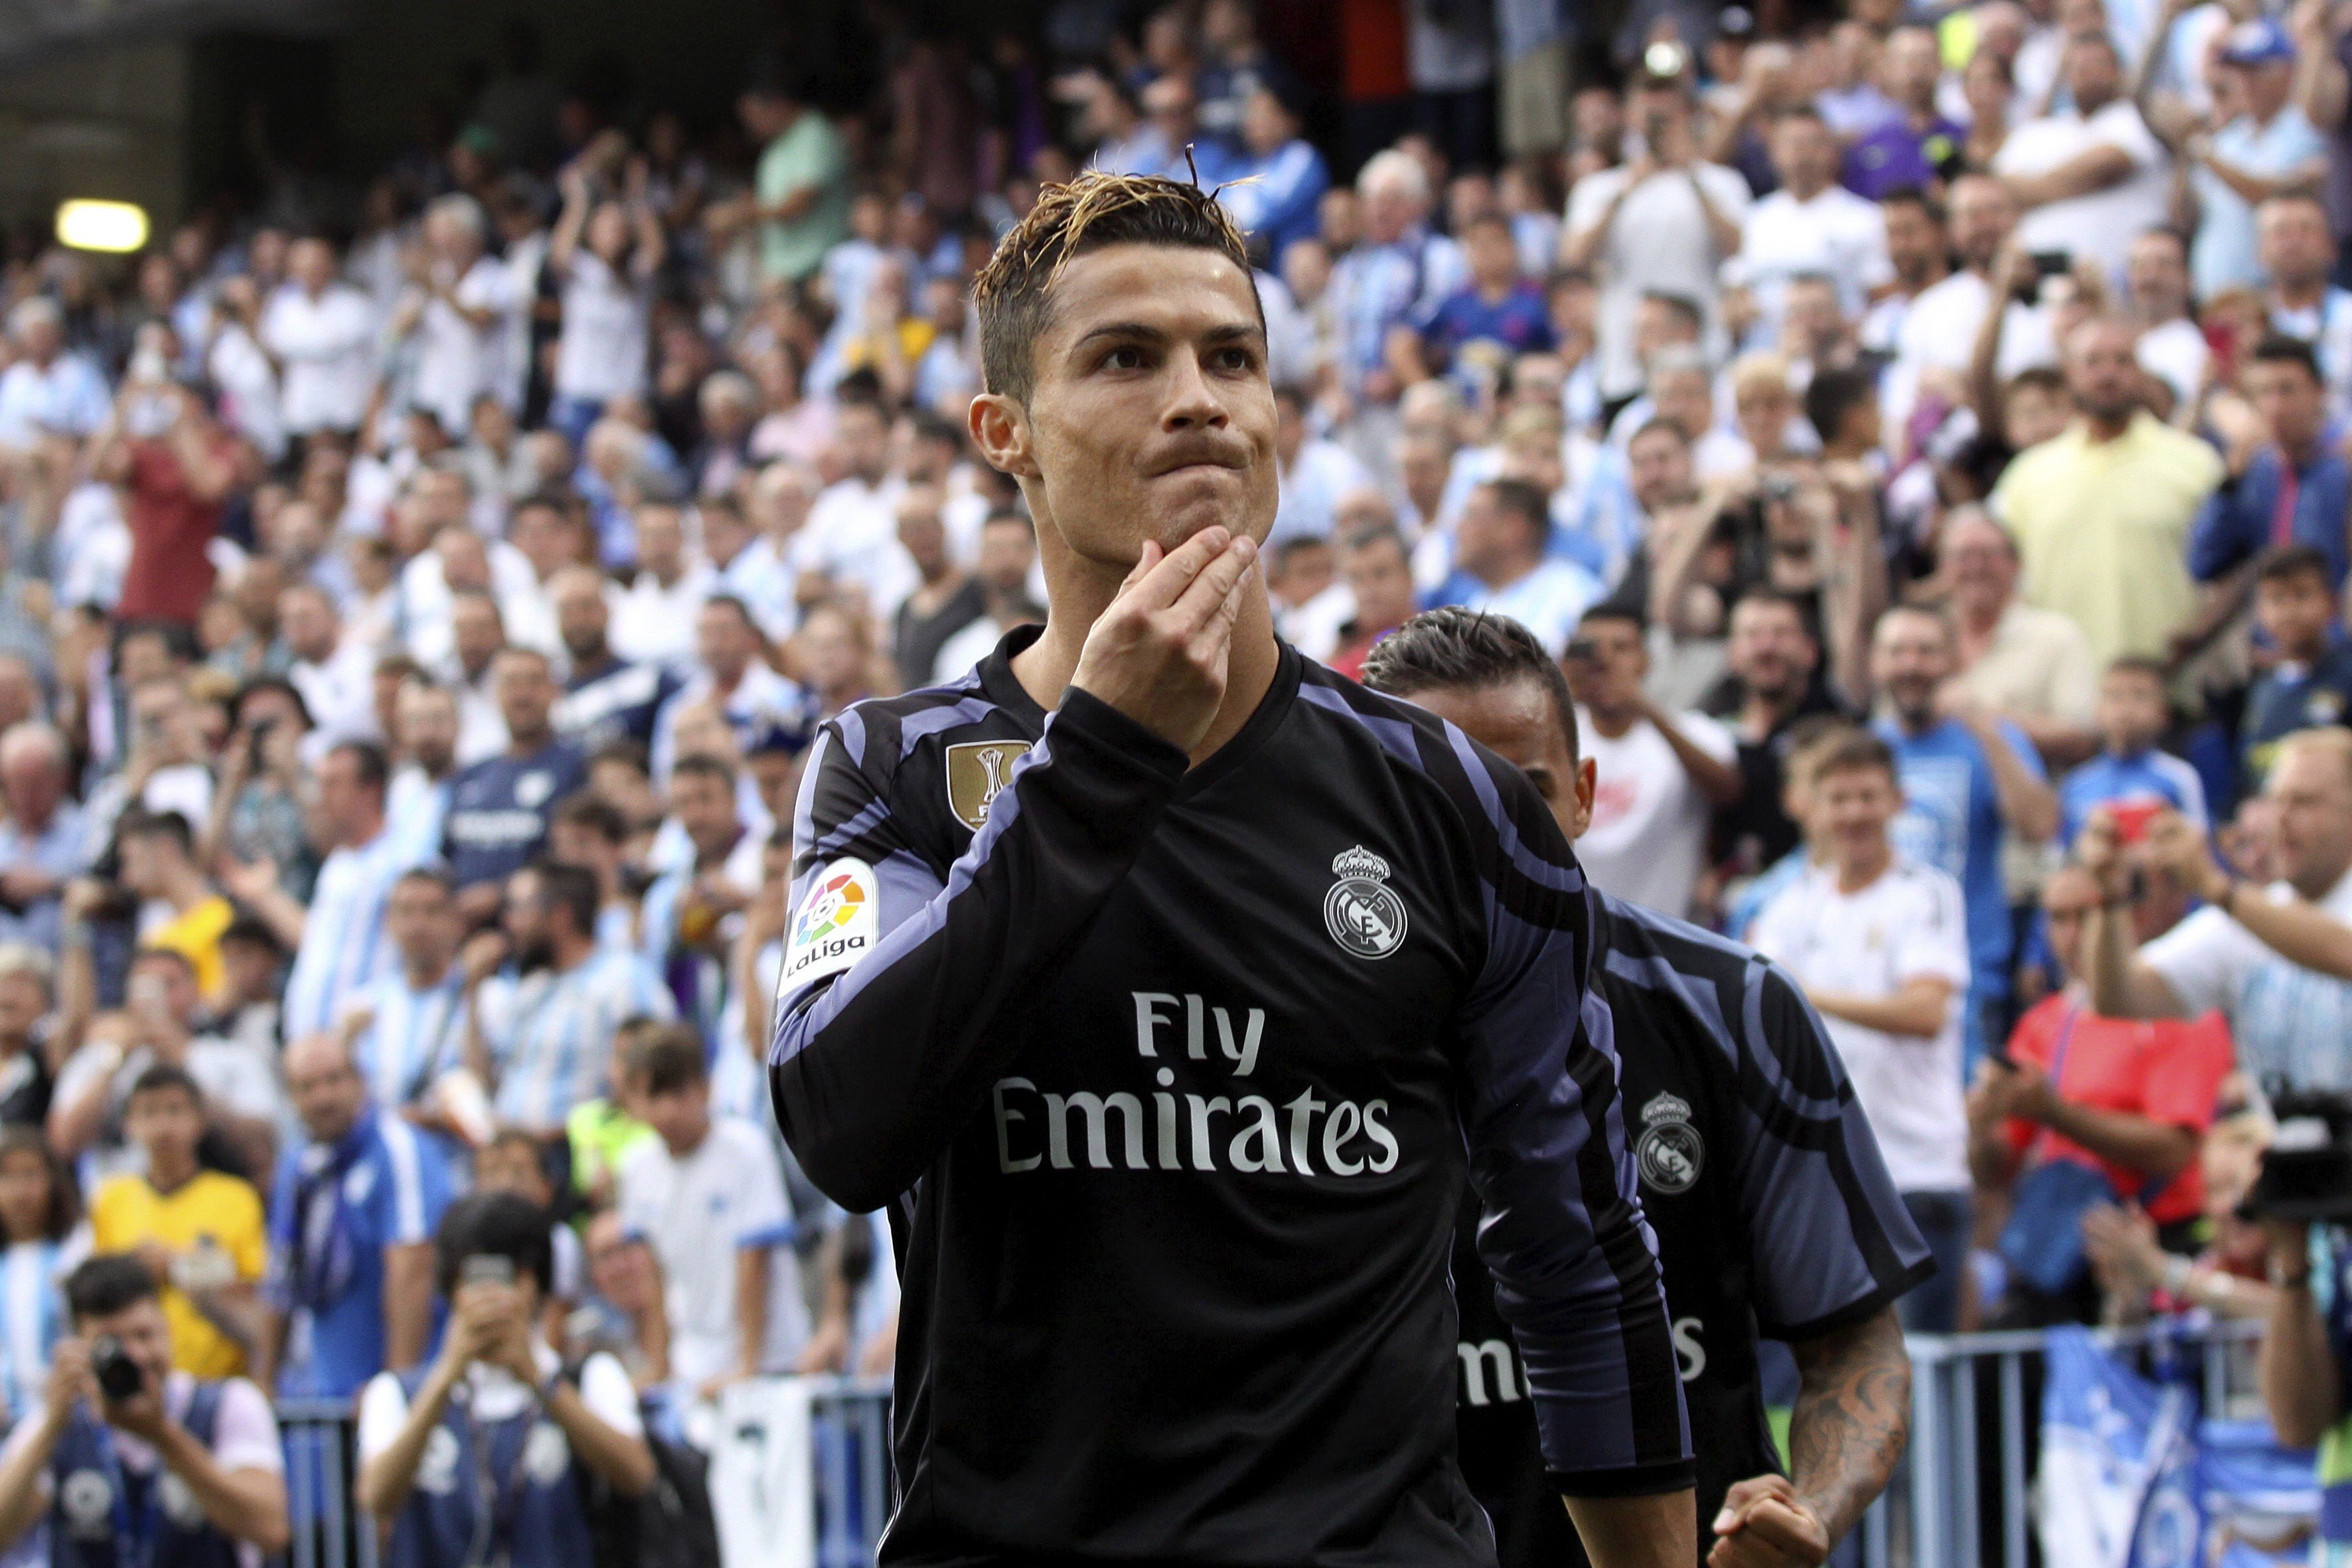 Hisenda creu que Cristiano Ronaldo no va actuar de bona fe